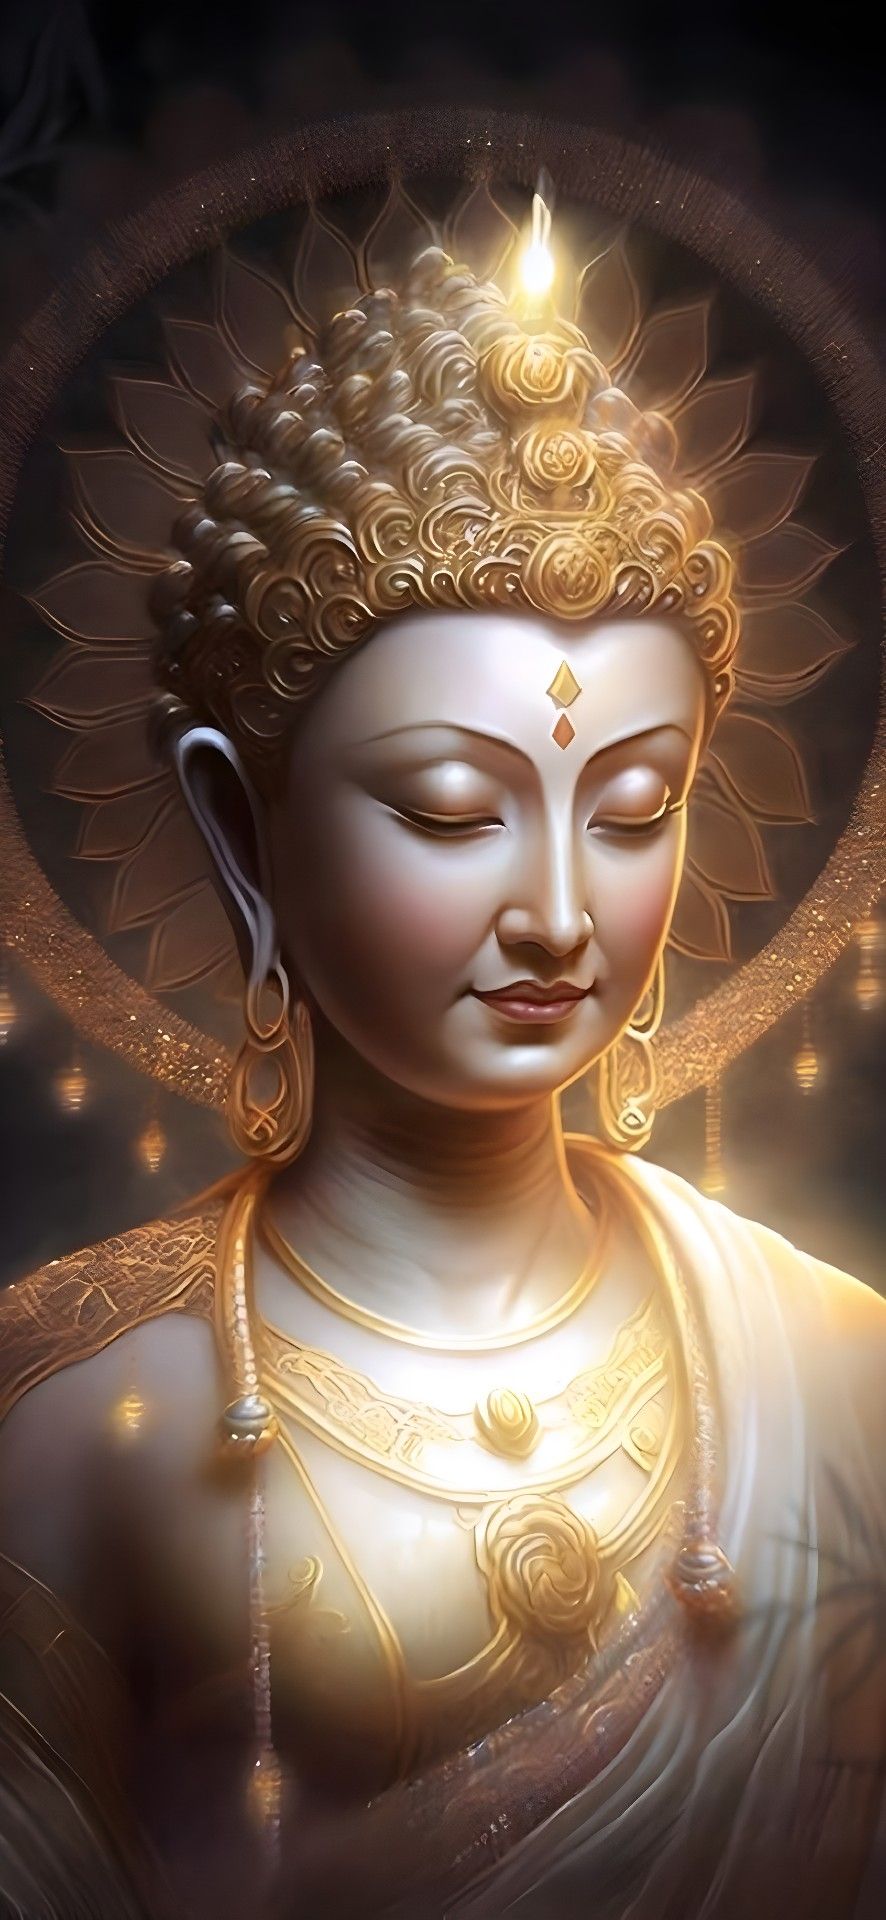 Hình ảnh Phật cực đẹp làm hình nền điện thoại iOS